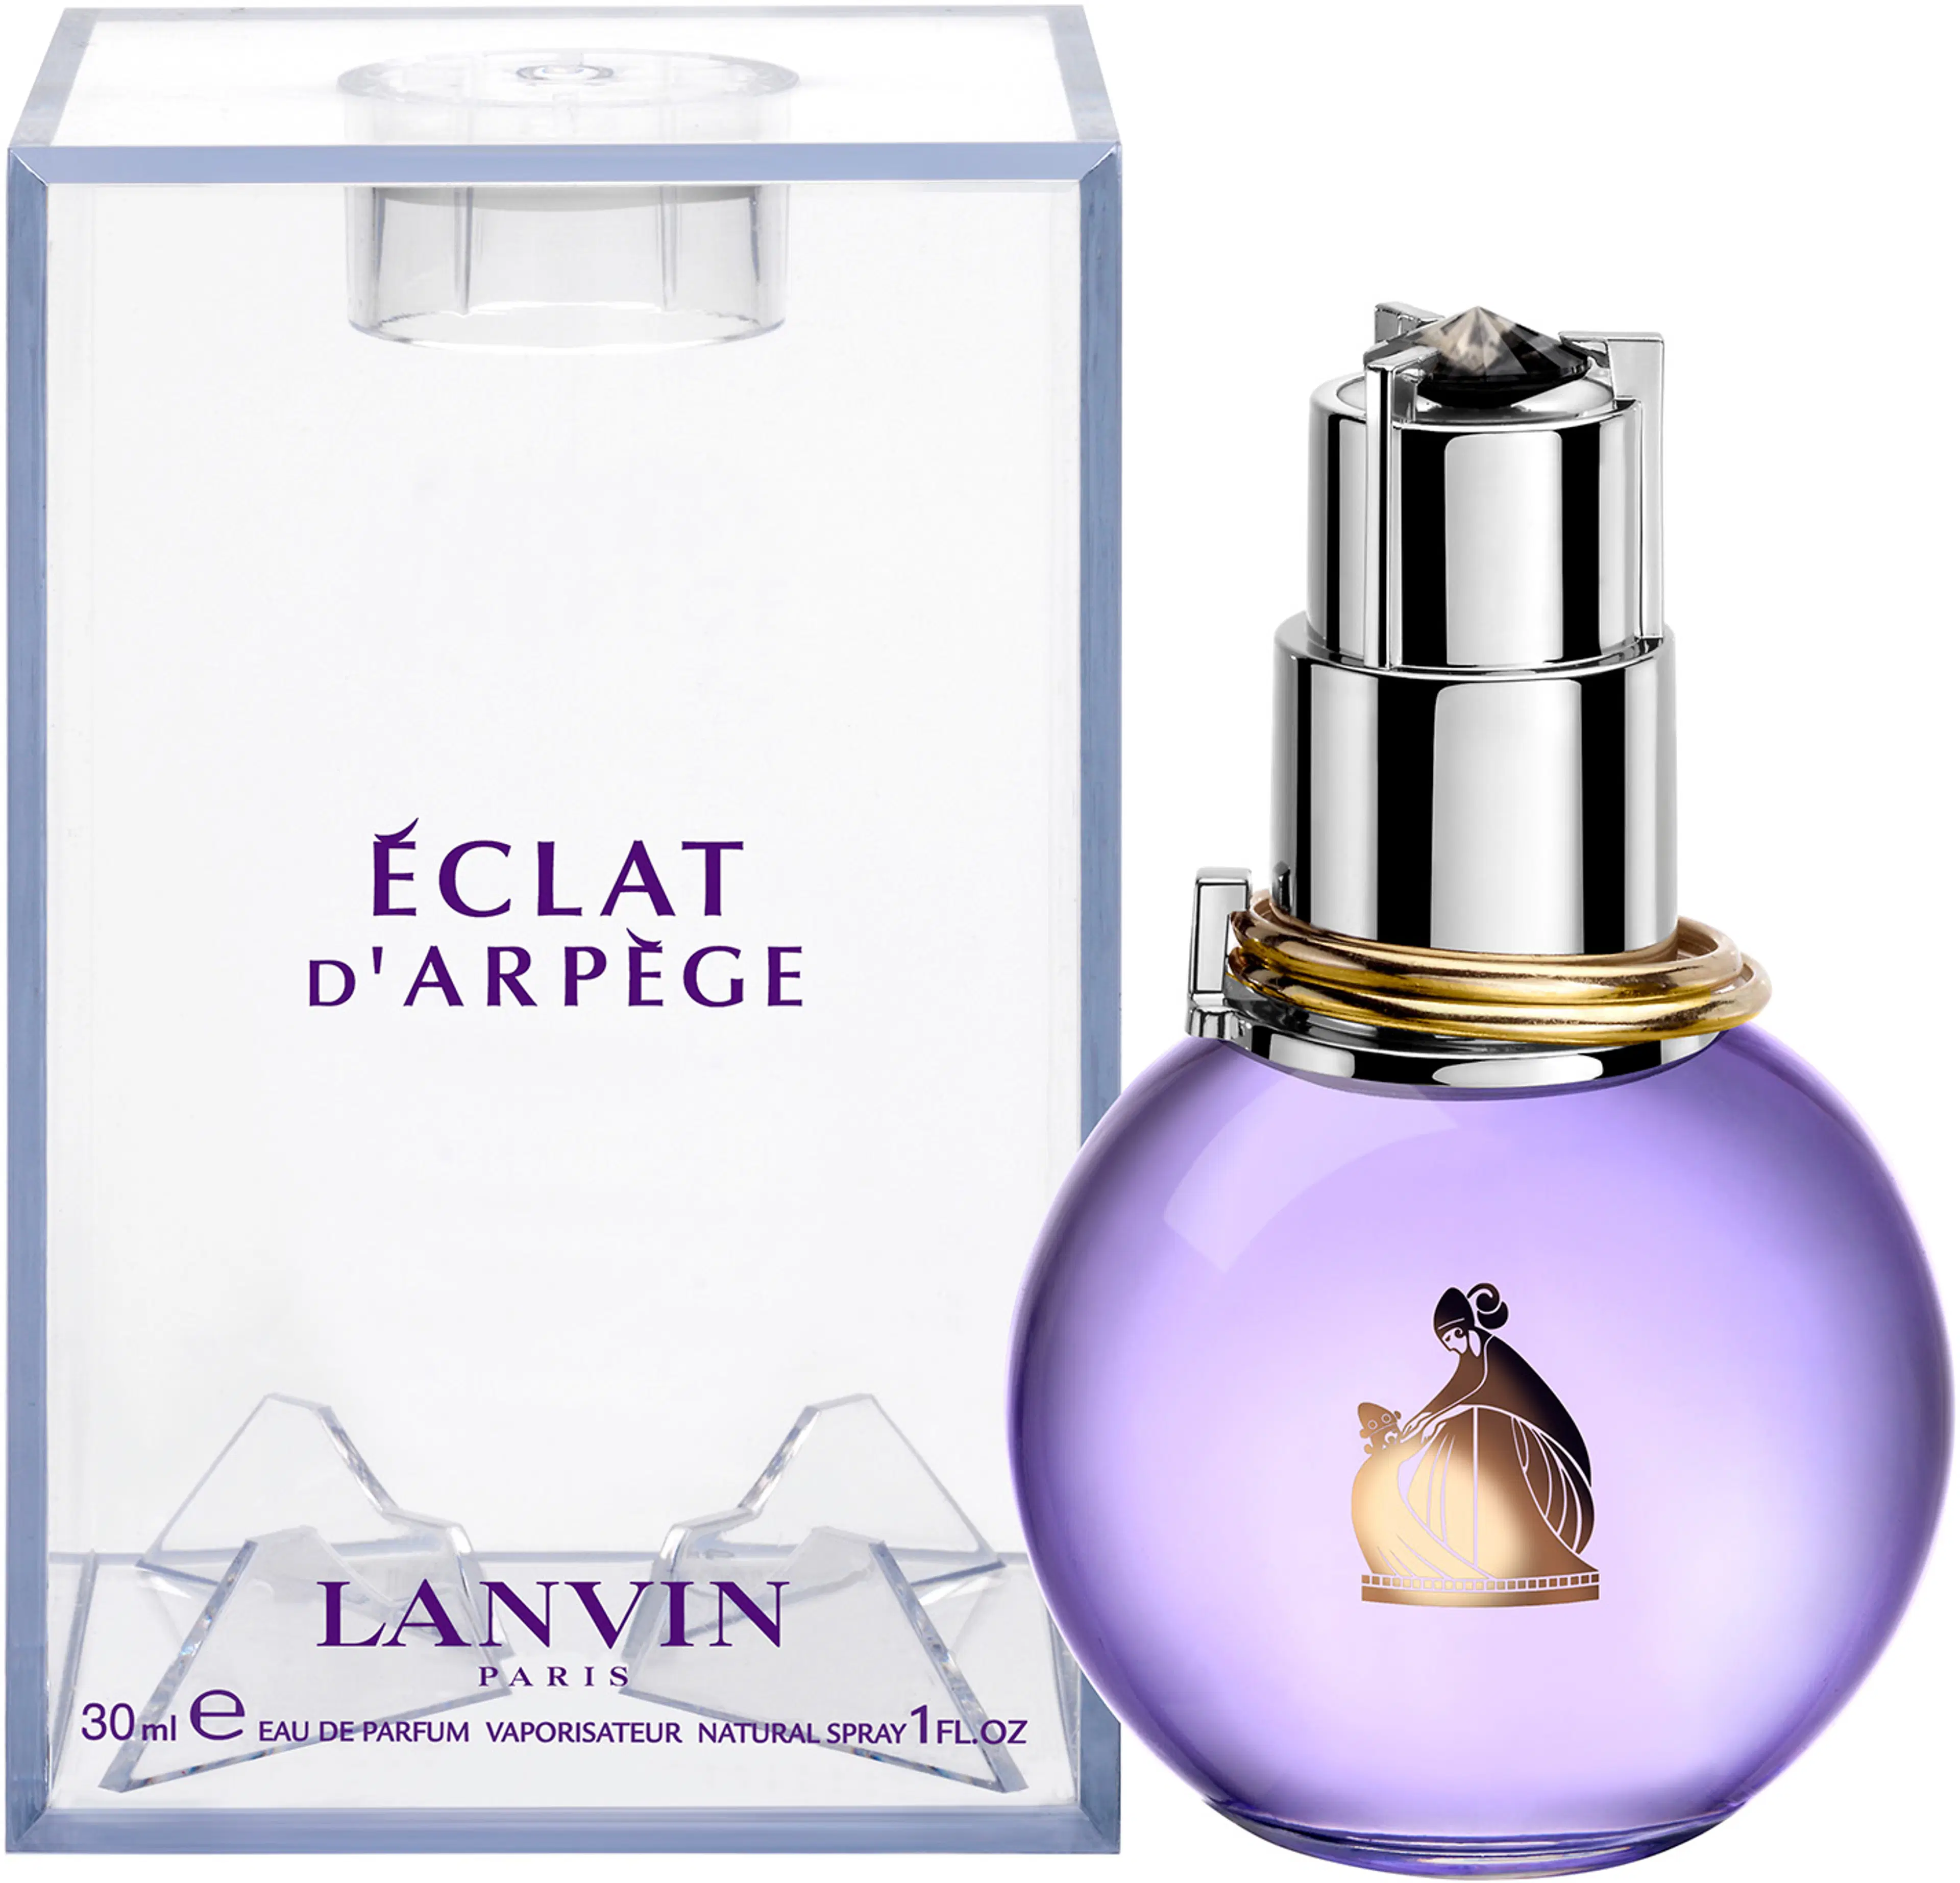 Lanvin Eclat d’Arpege EdP tuoksu 30 ml